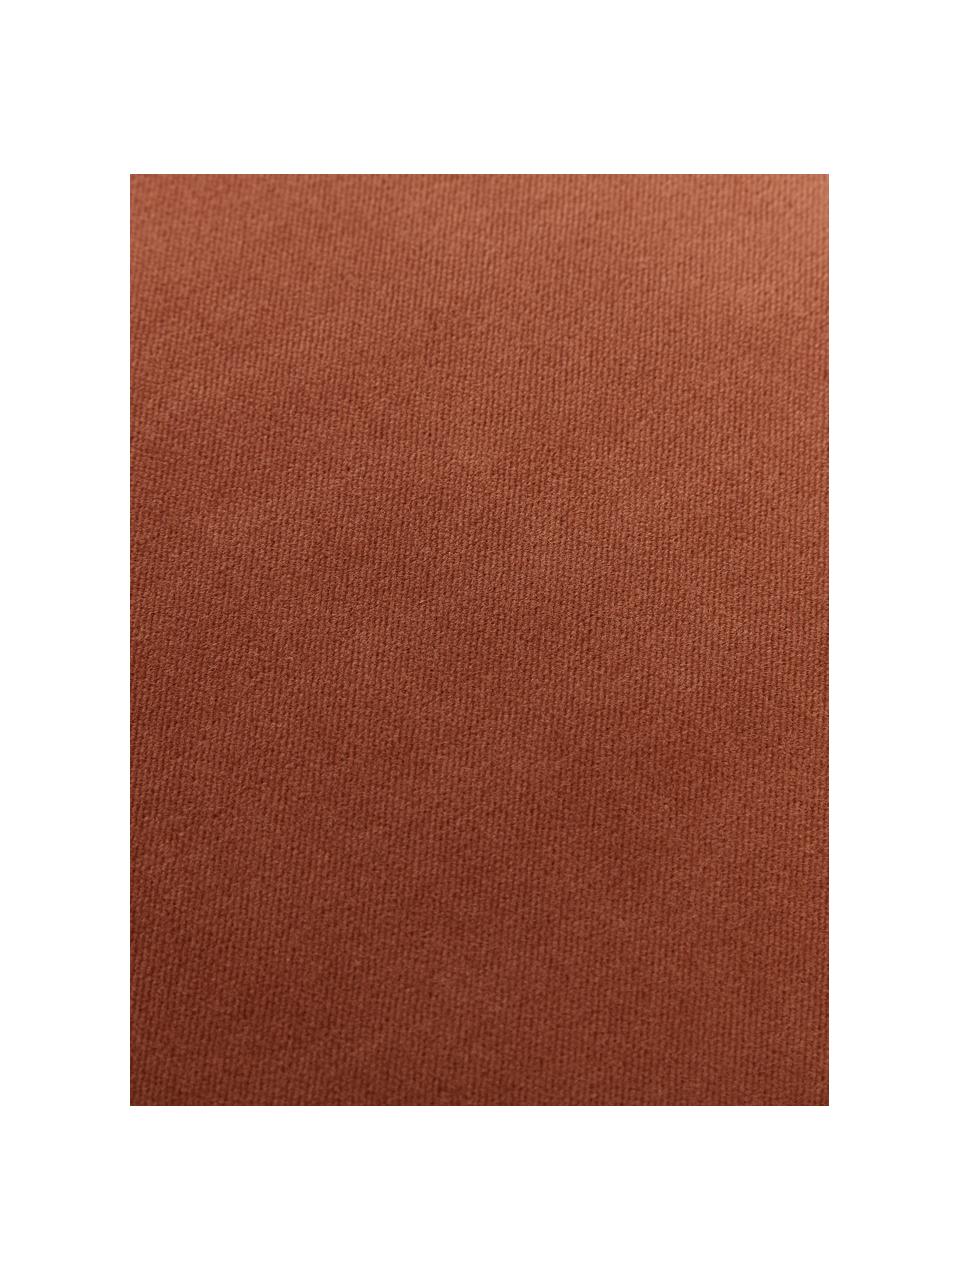 Einfarbige Samt-Kissenhülle Dana in Rostrot, 100% Baumwollsamt, Rostrot, B 50 x L 50 cm